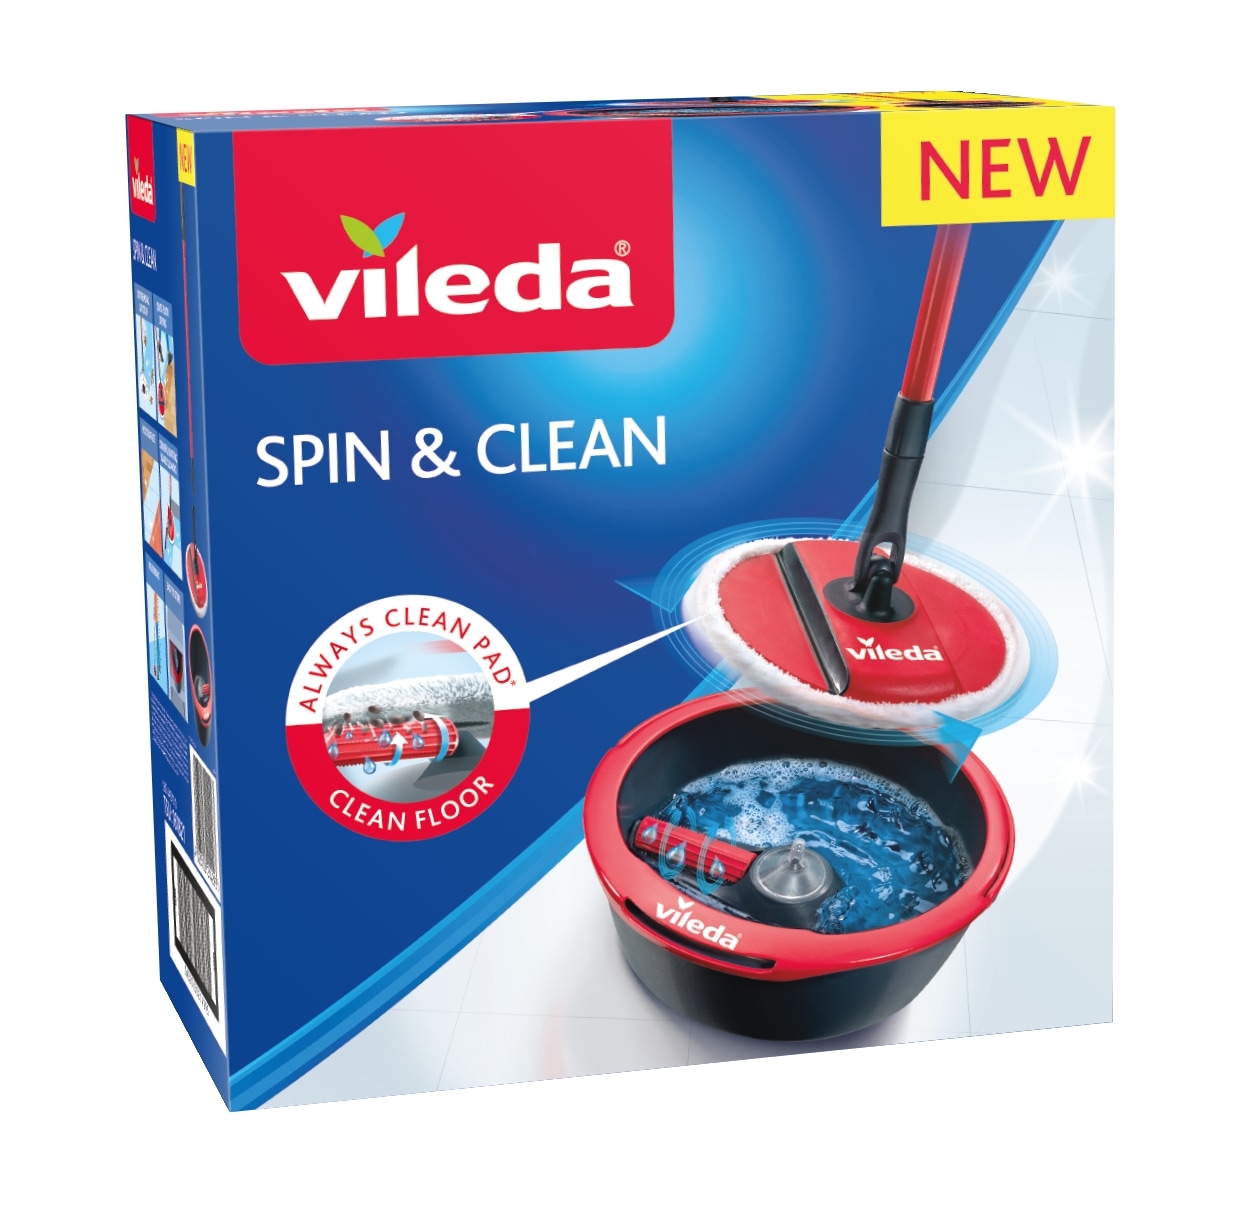 Mopa Vileda Spin & Clean Gira sin esfuerzo con sólo accionar el mango Paño  lavable a máquina